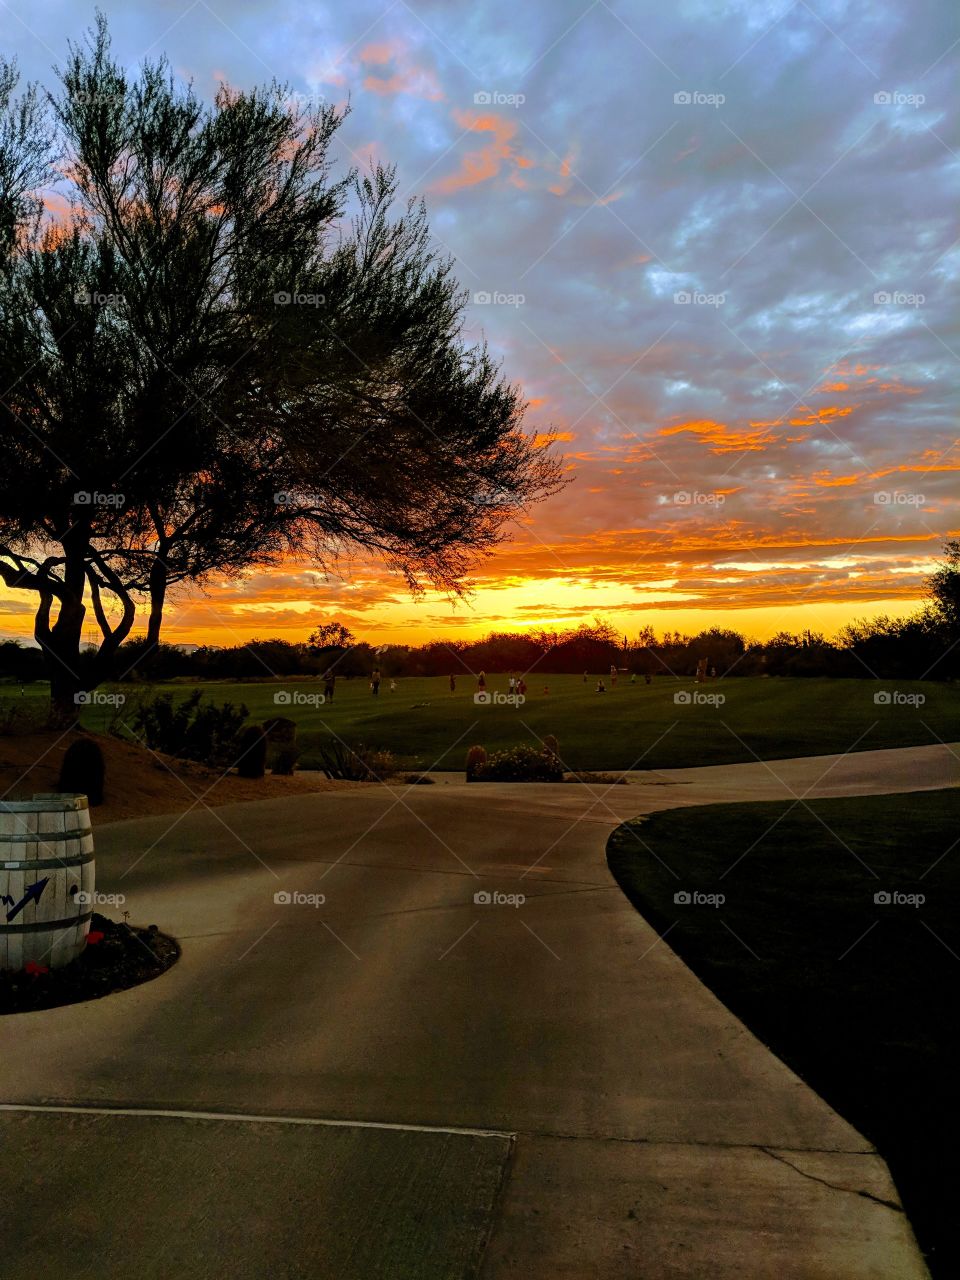 Sunset - Scottsdale, Arizona